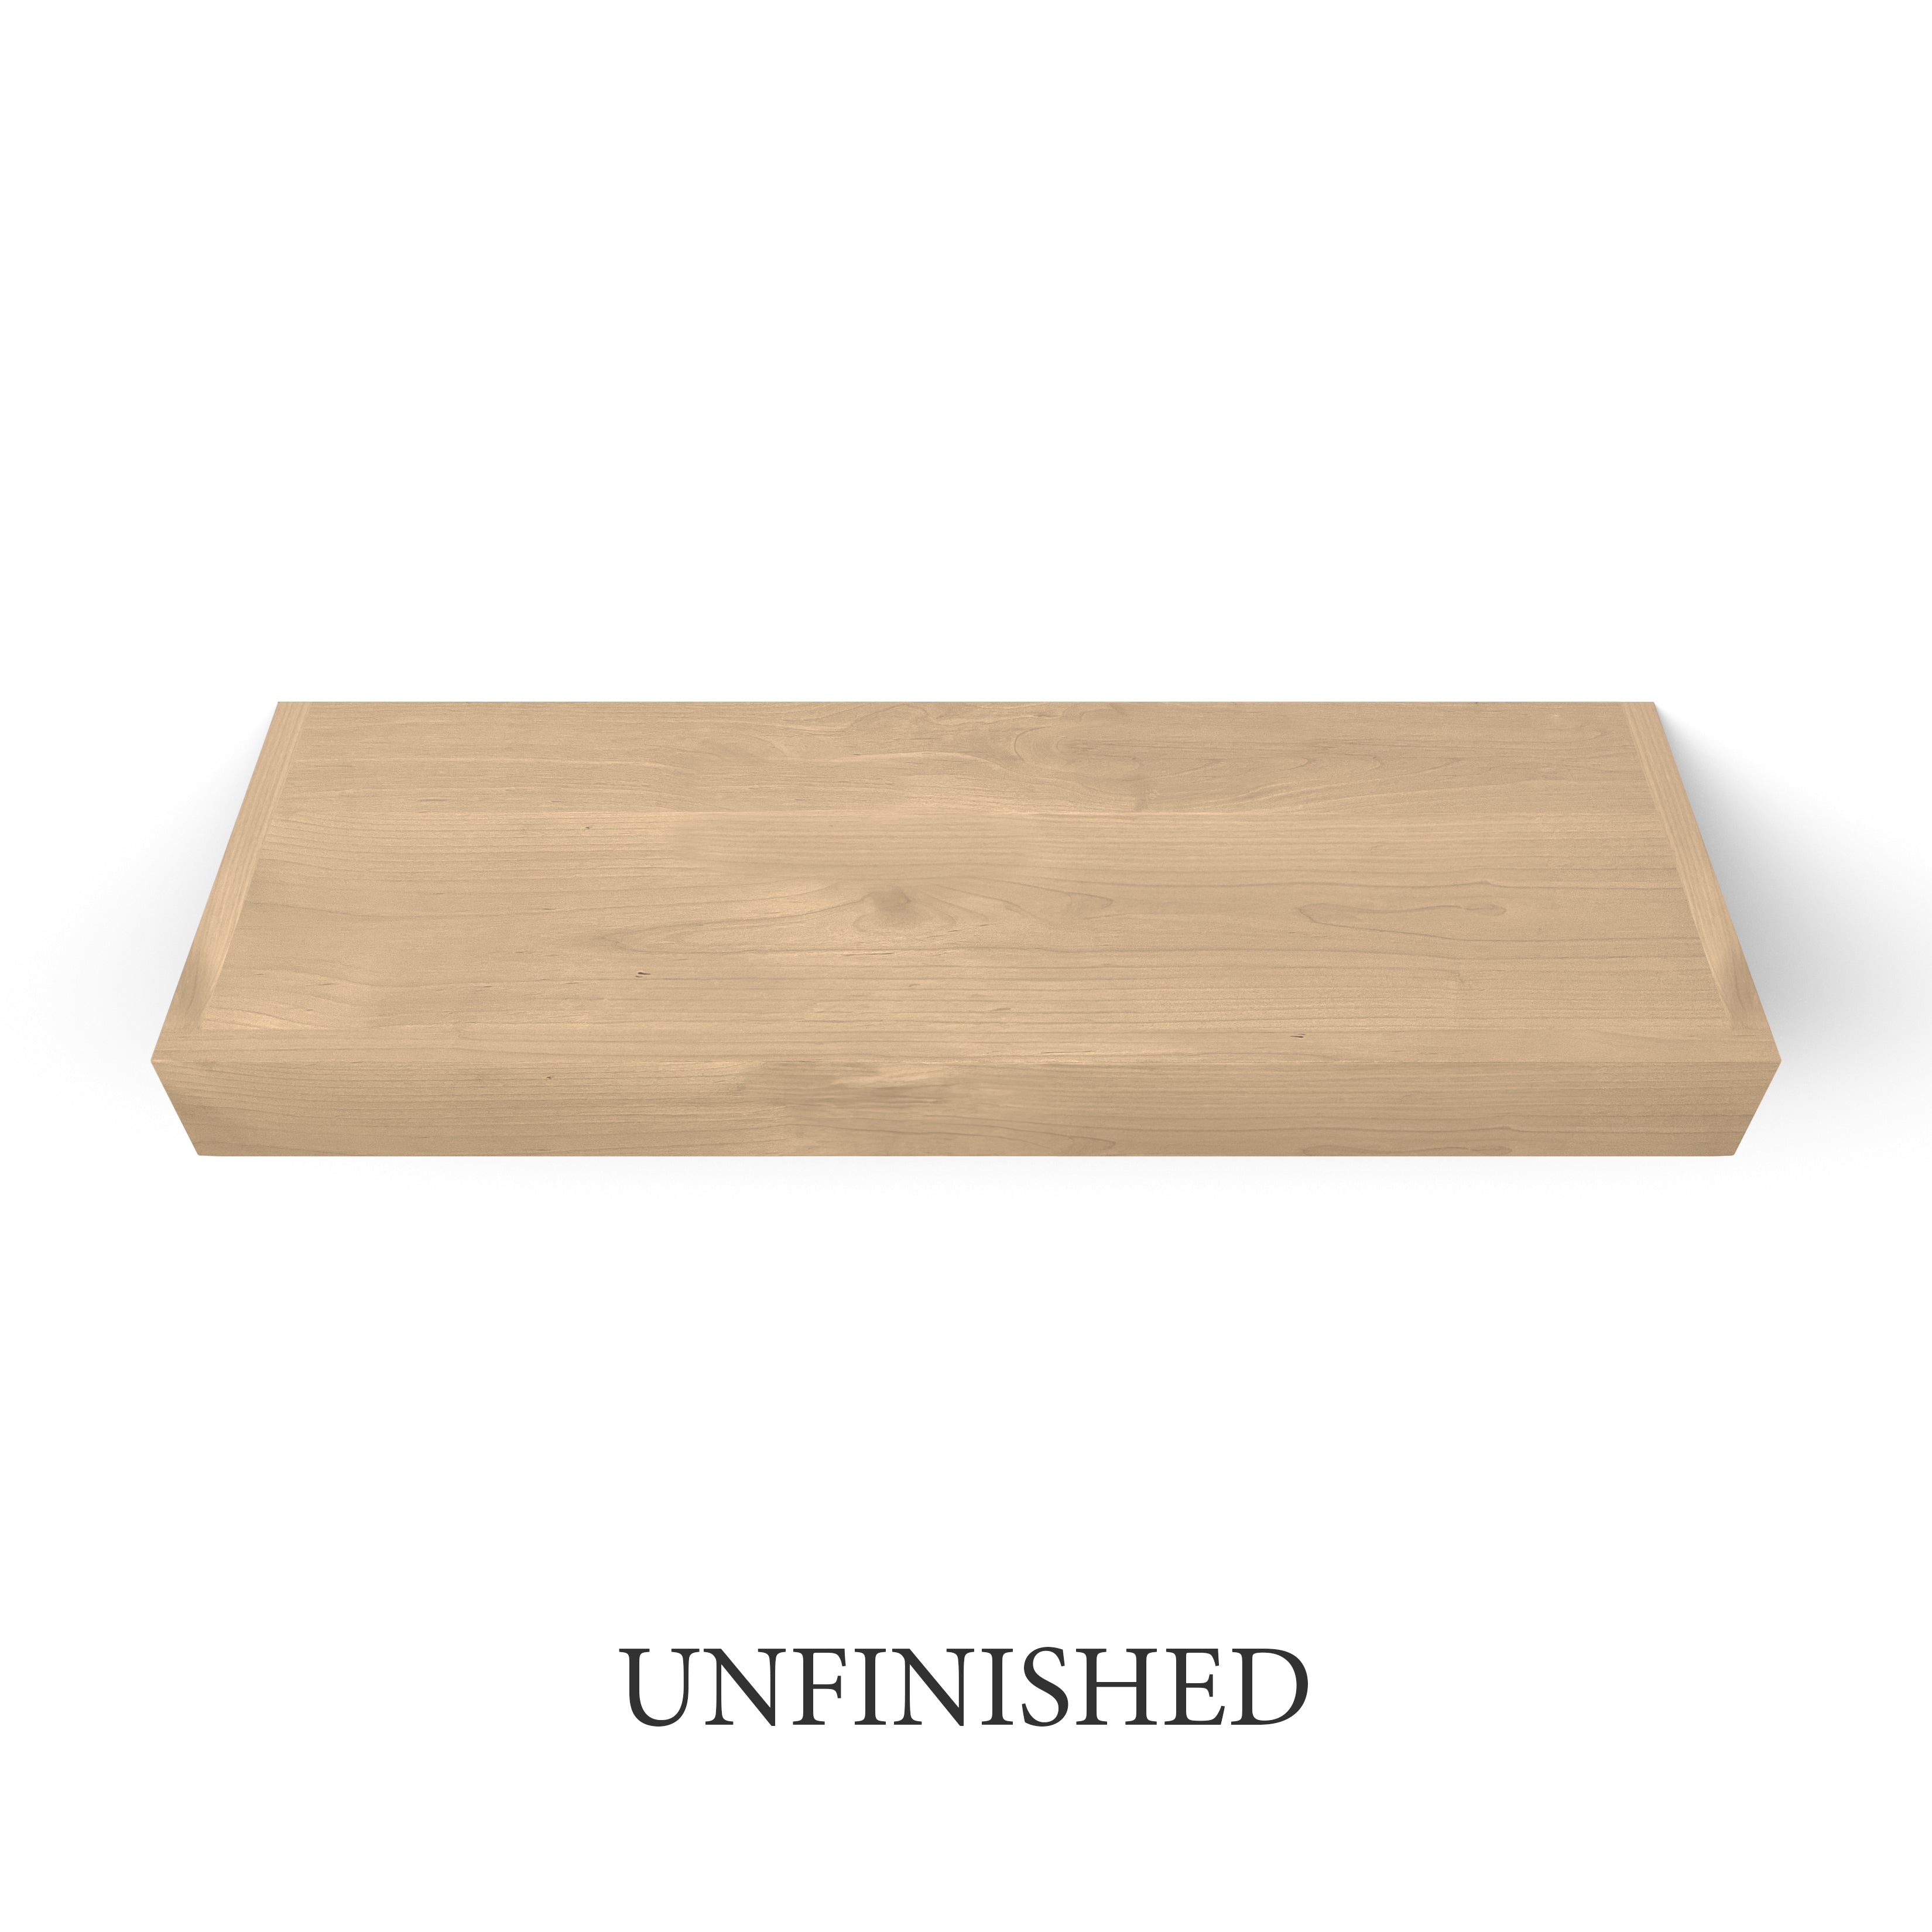 unfinished Superior Alder 3 Inch Thick Floating Shelf